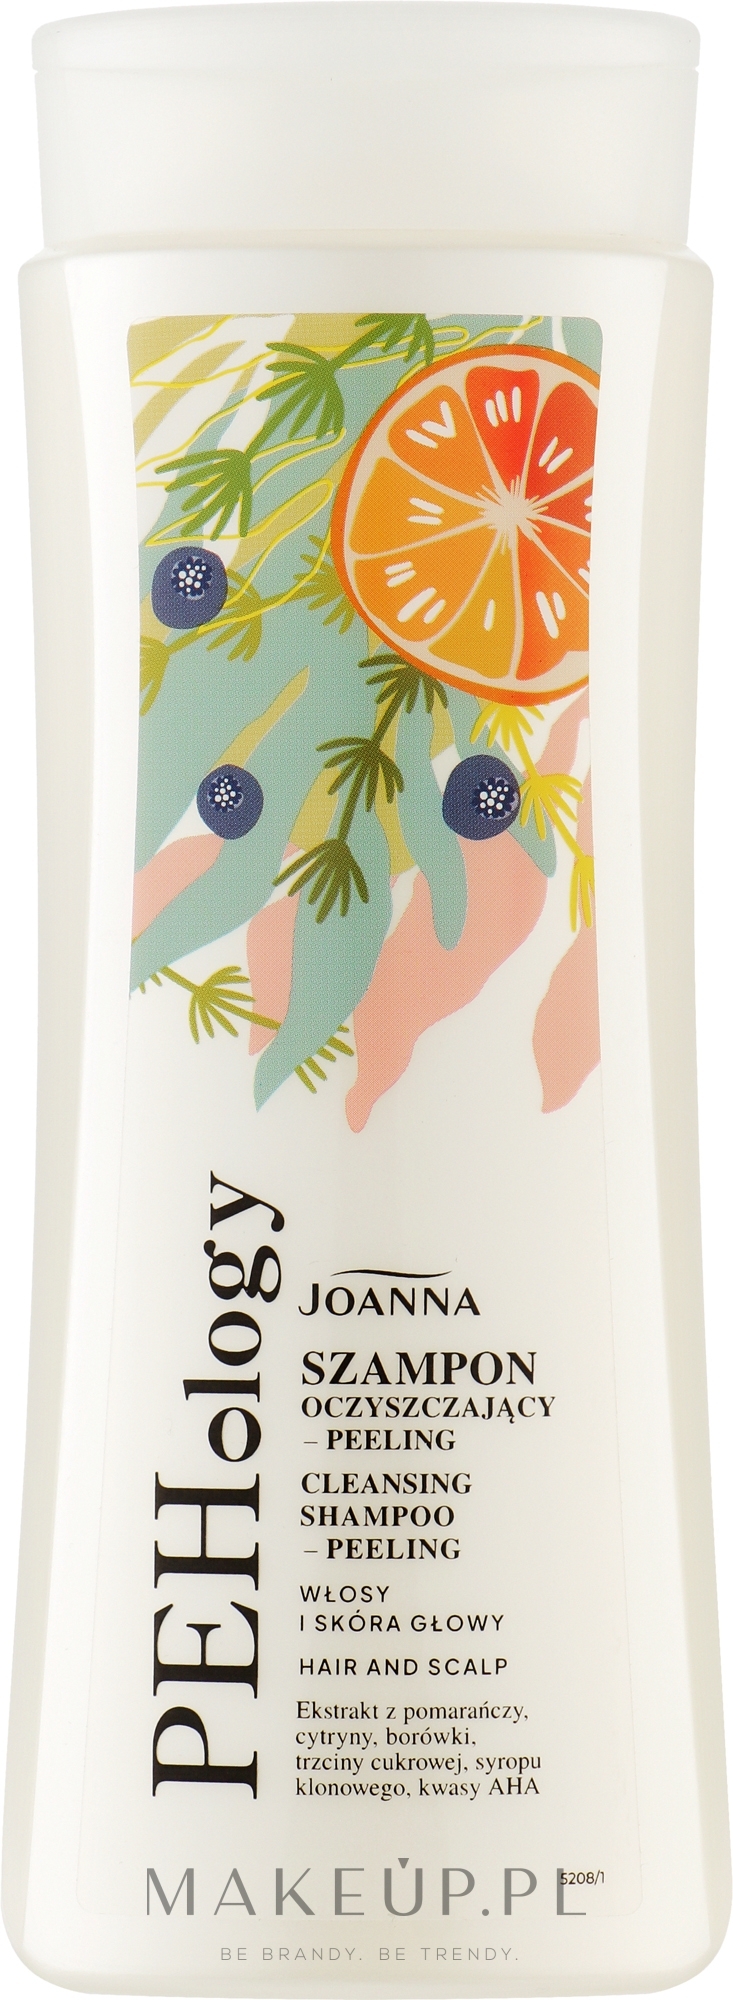 Szampon-peeling do włosów i skóry głowy - Joanna PEHology Cleansing Shampoo-Pelling Hair And Scalp — Zdjęcie 300 ml